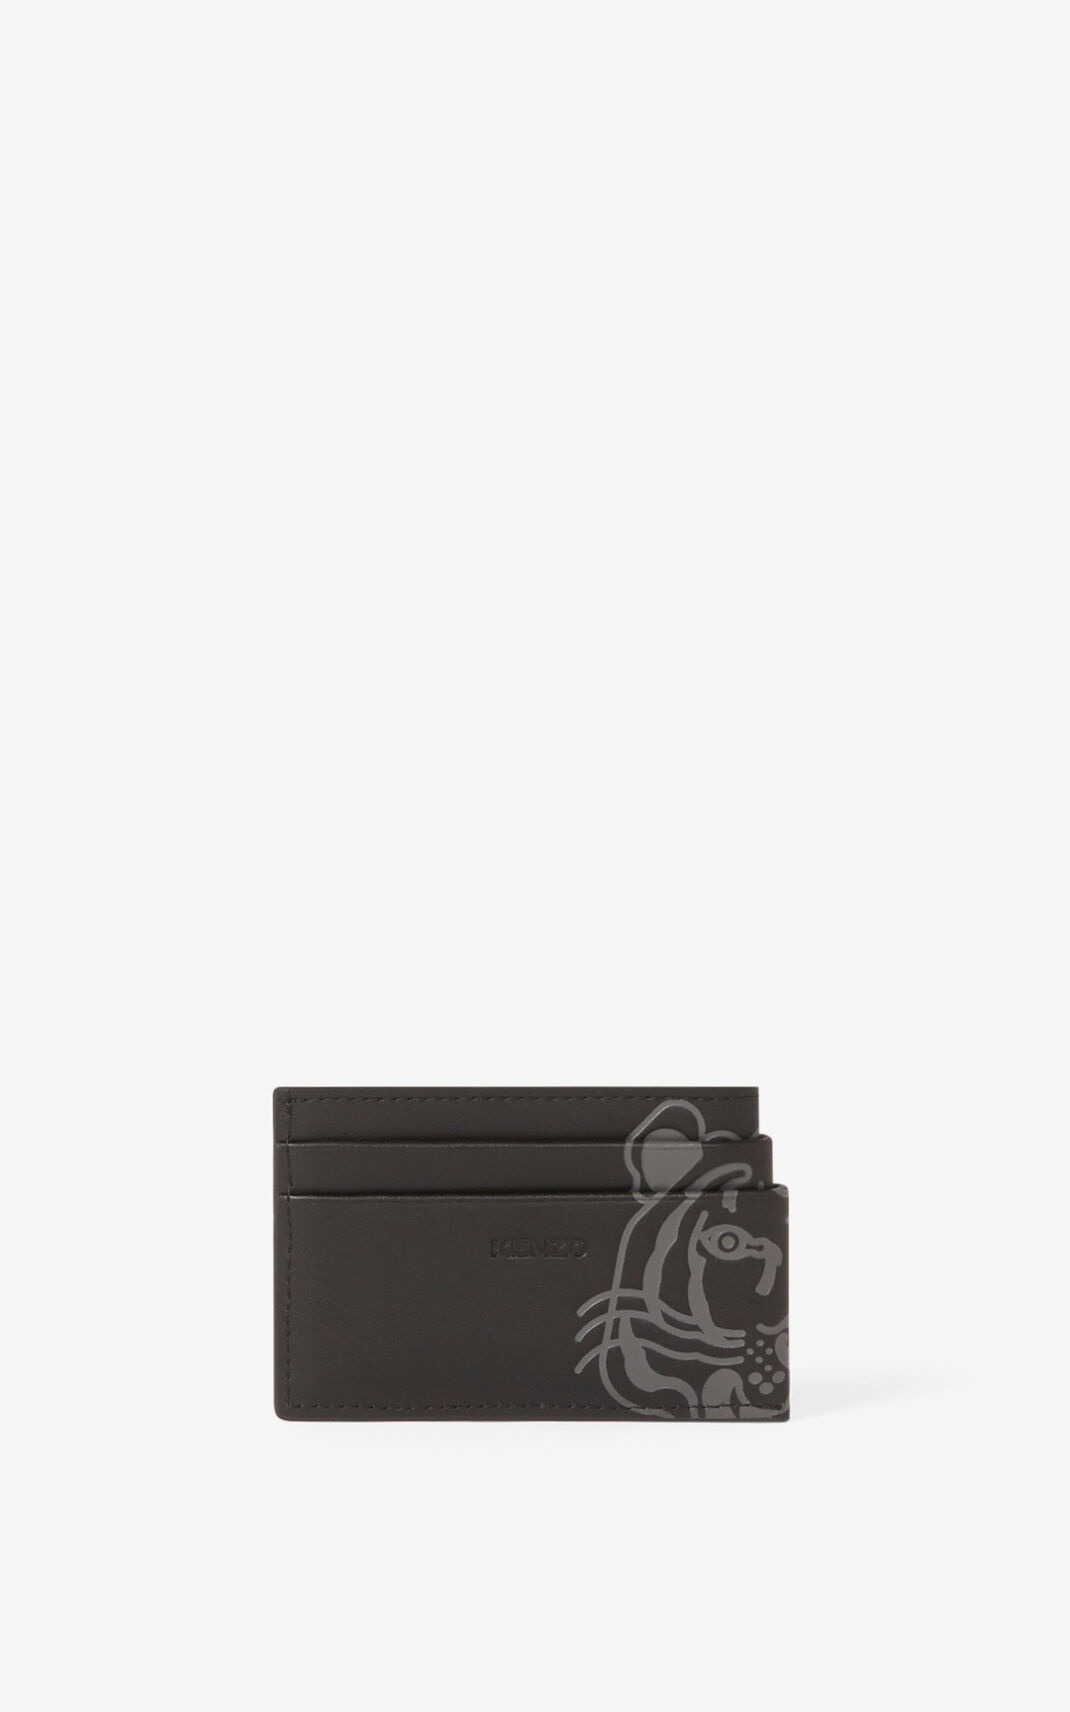 K-Tiger leather card holder - 2